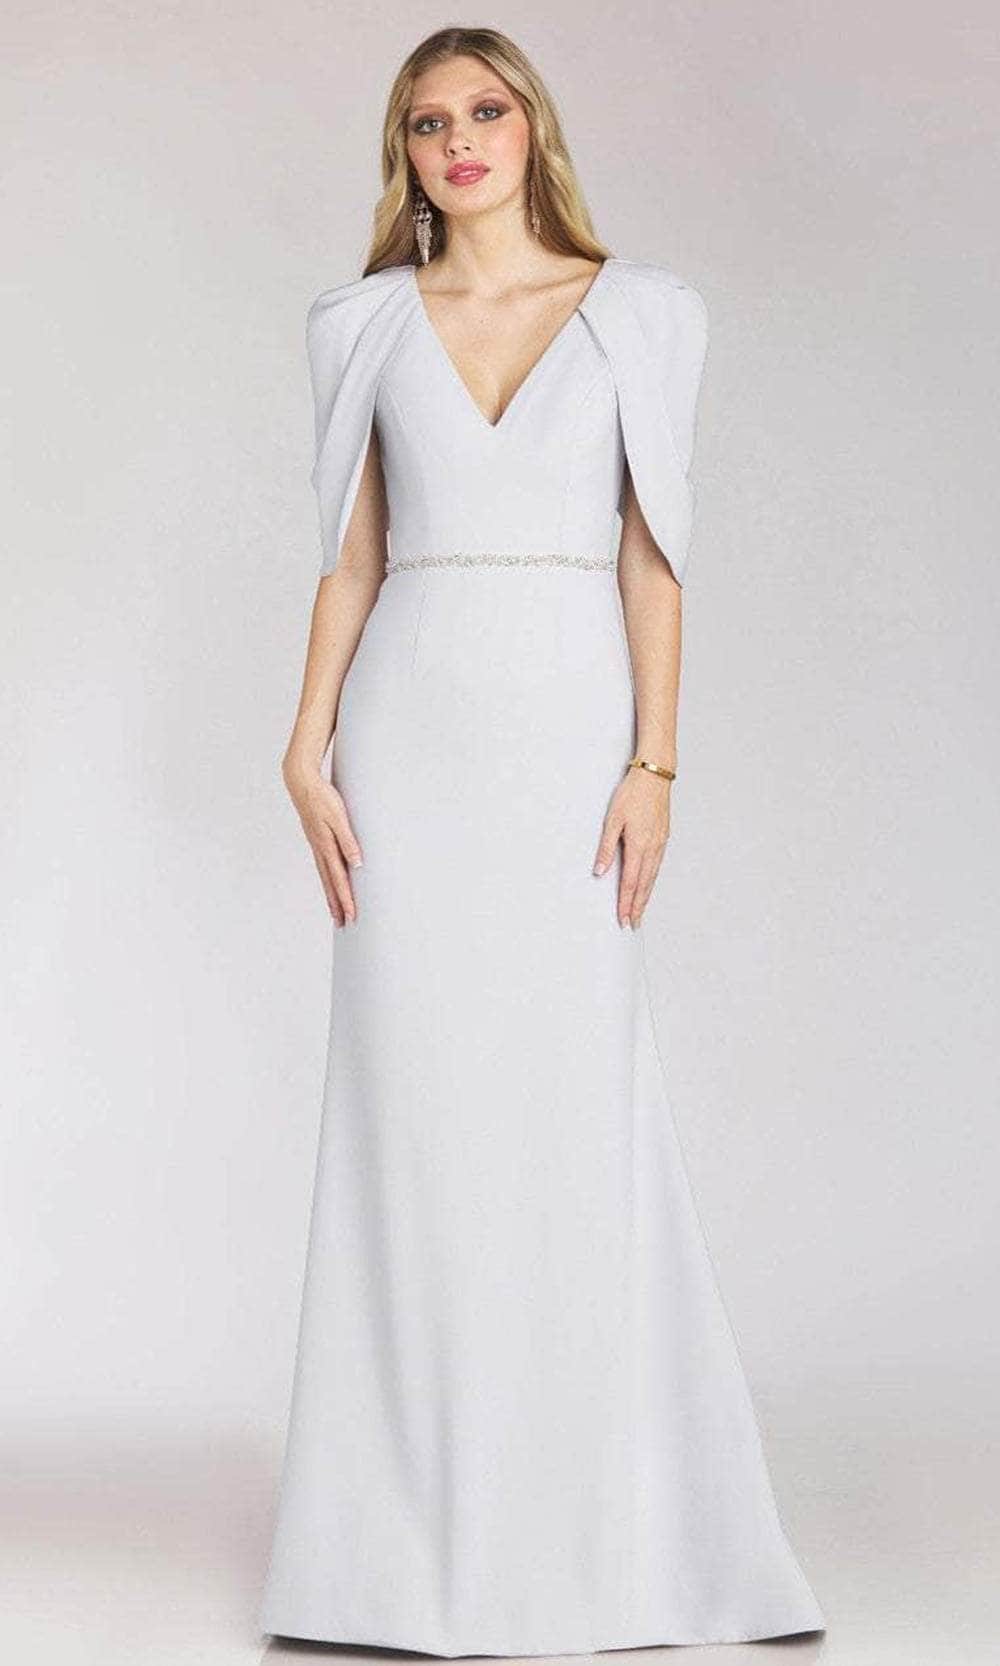 Gia Franco 12215 - V-Neck Trumpet Evening Dress Special Occasion Dresses